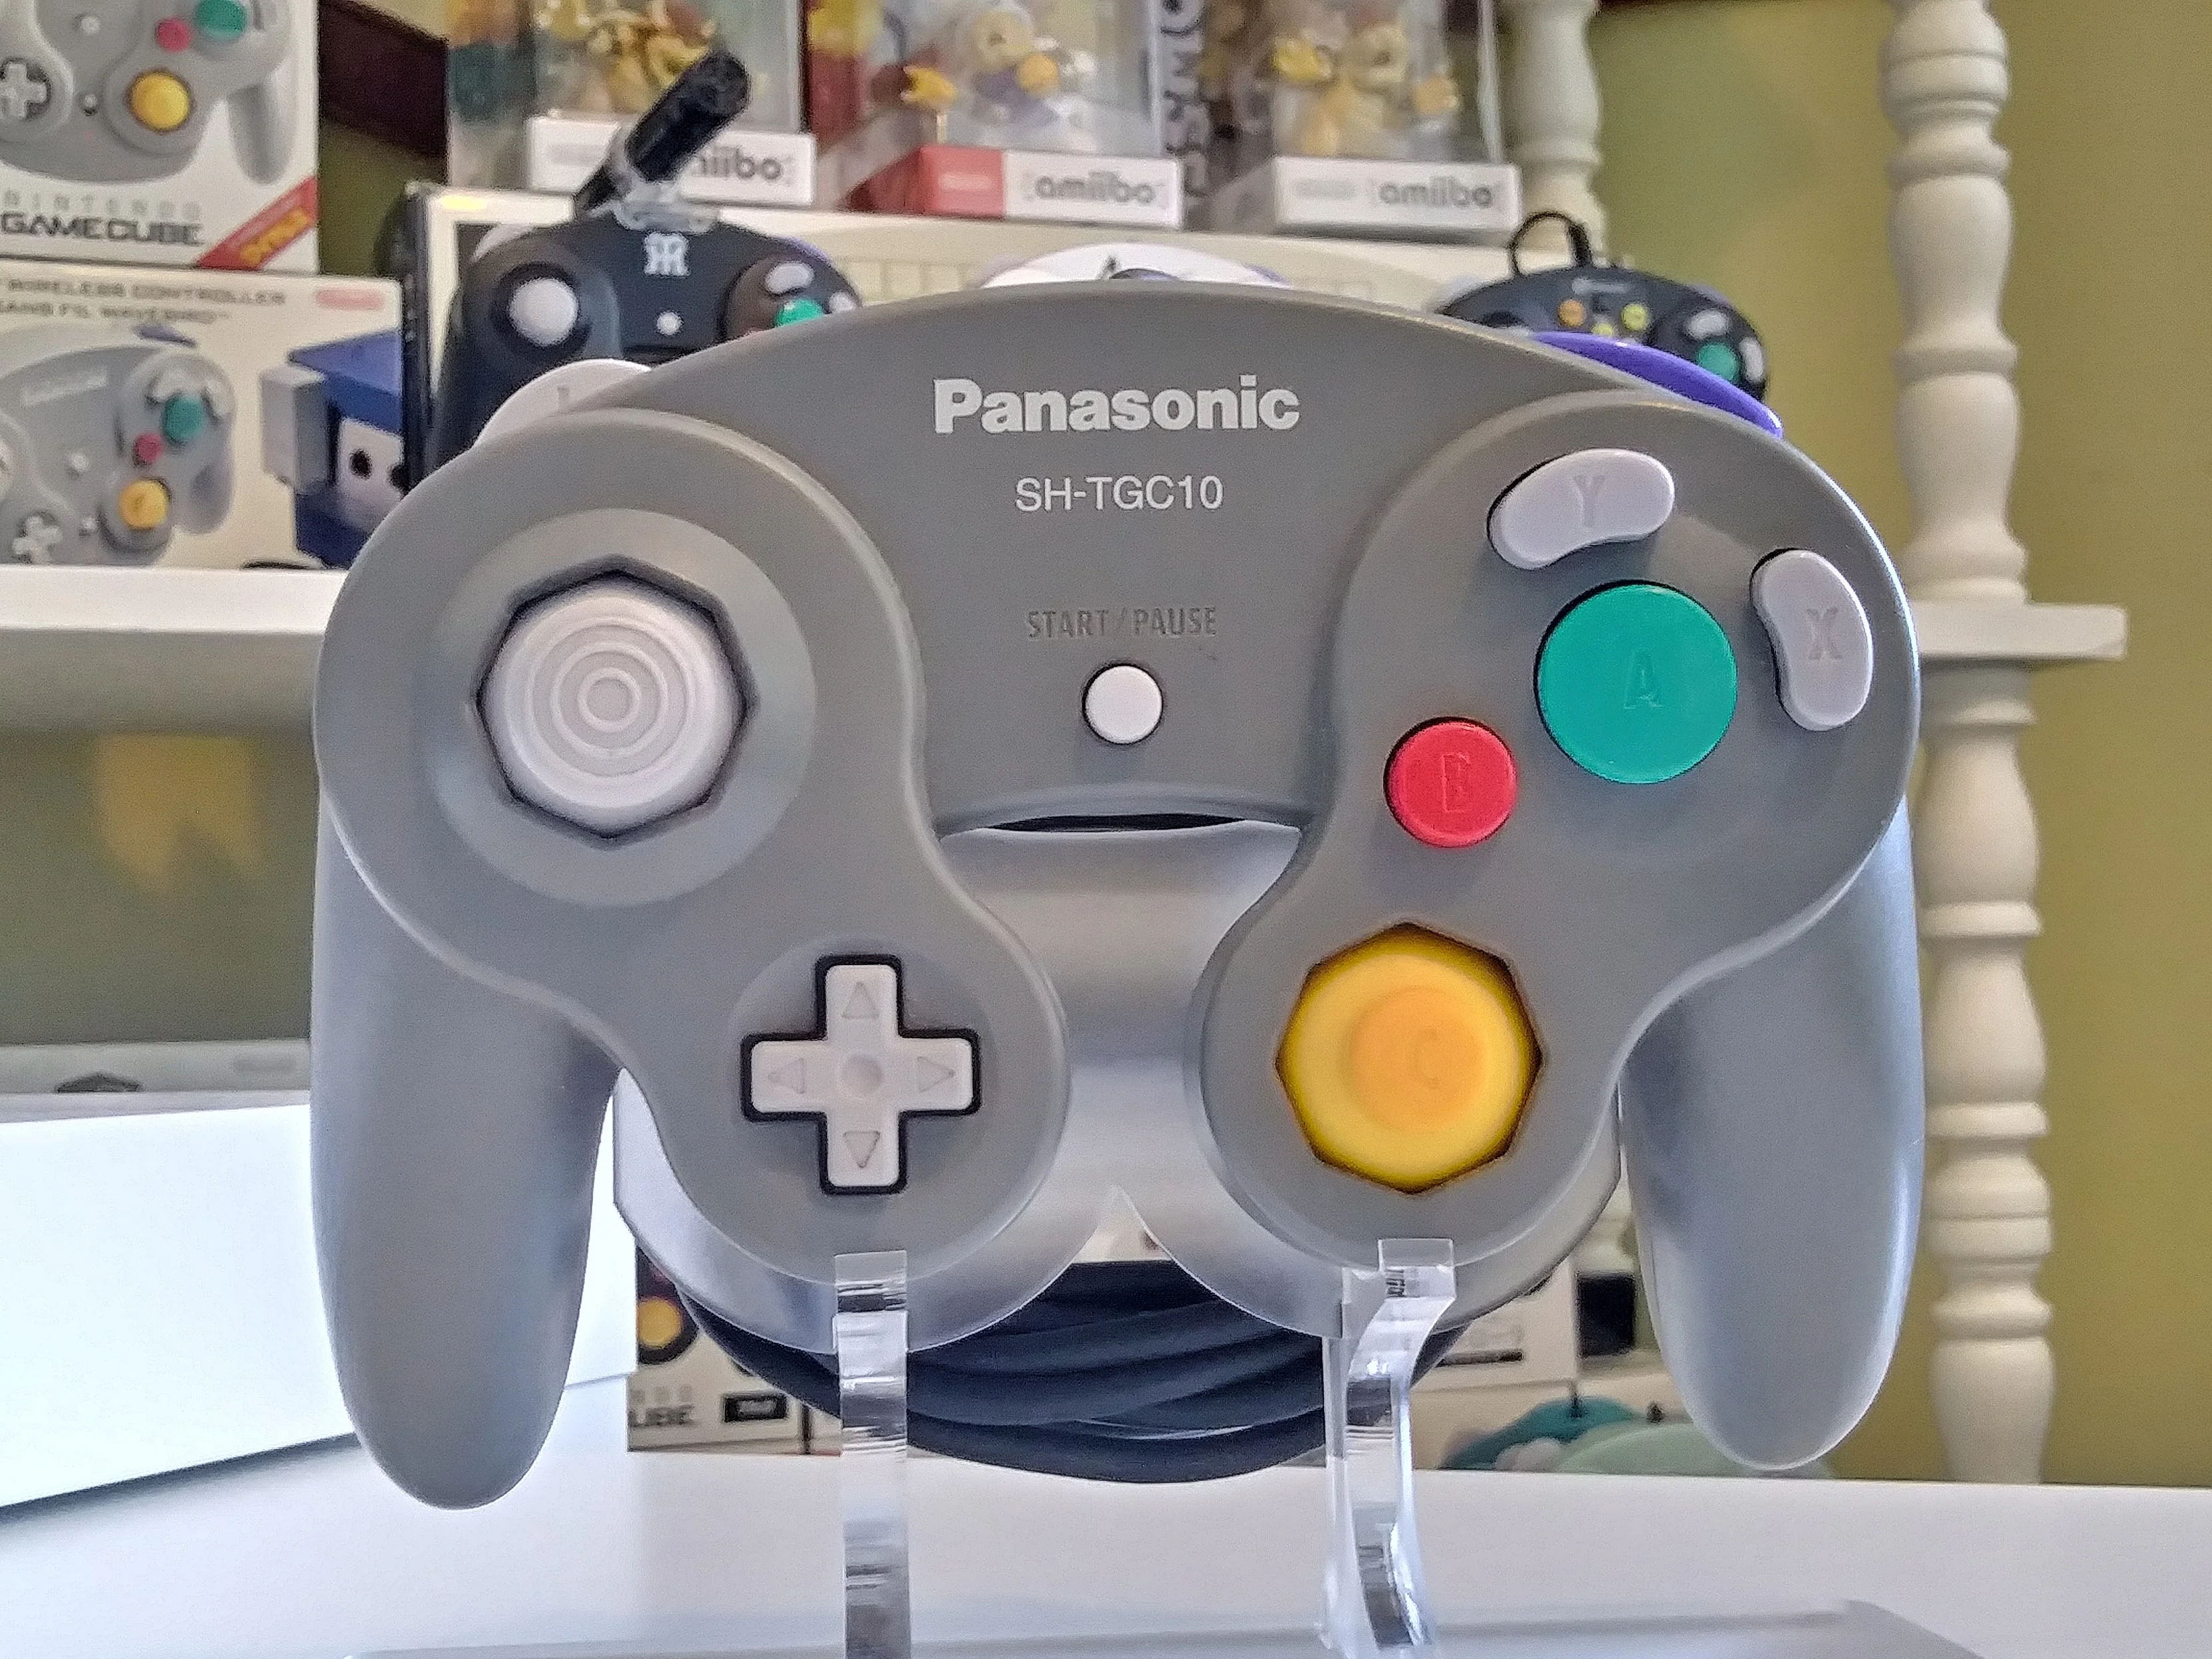  Nintendo GameCube Panasonic Q Controller